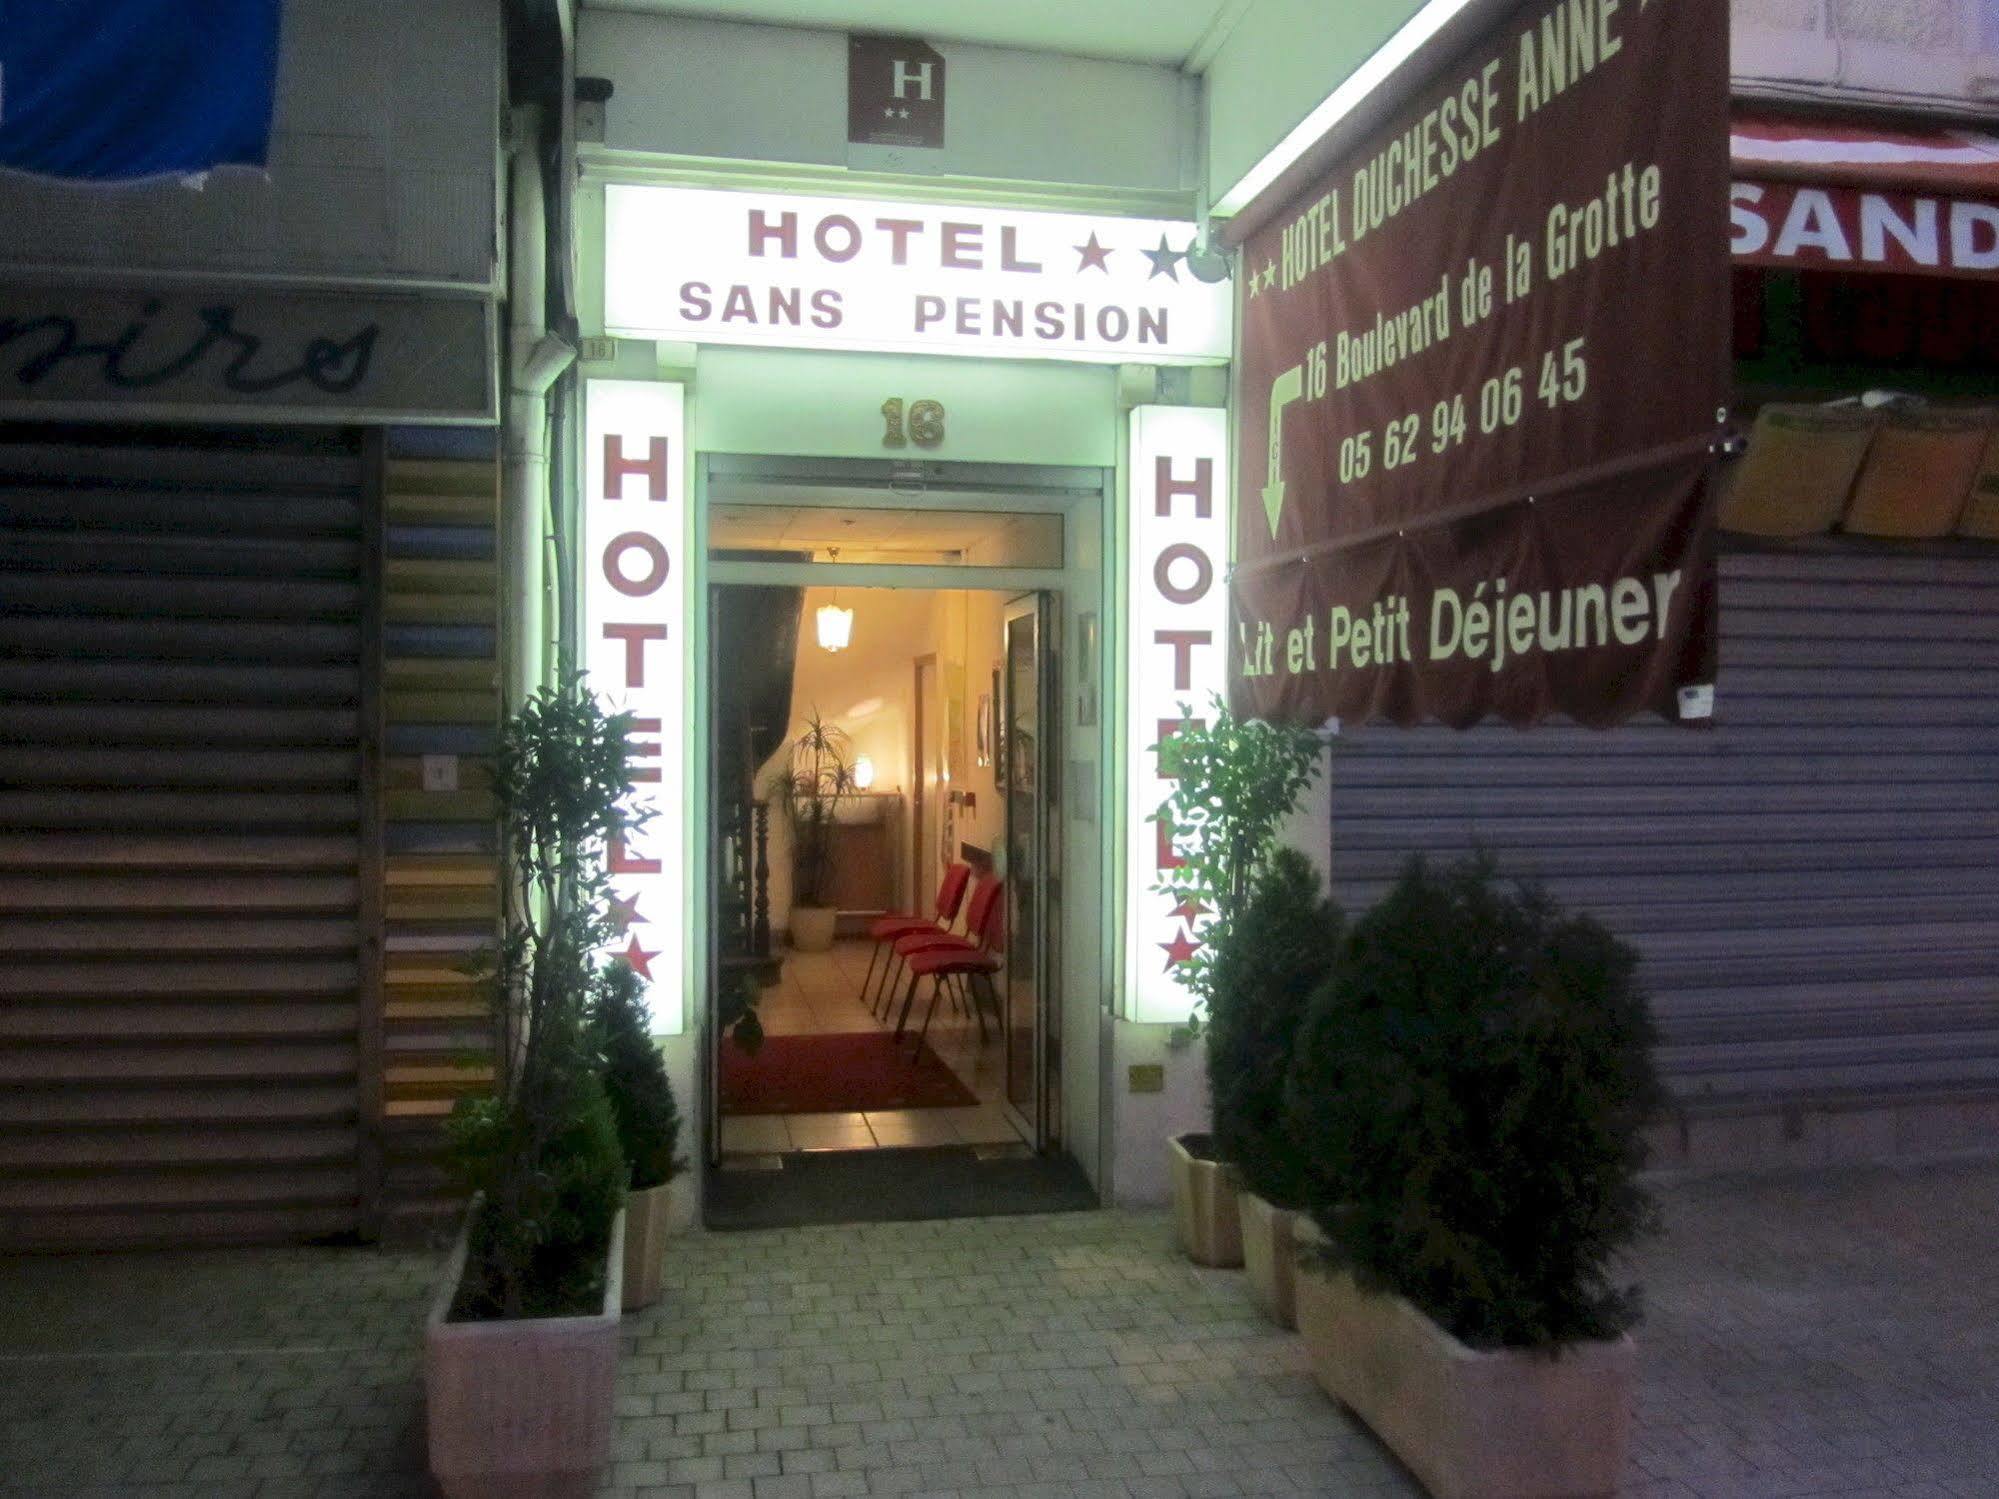 Hotel Duchesse Anne Lourdes Exterior photo